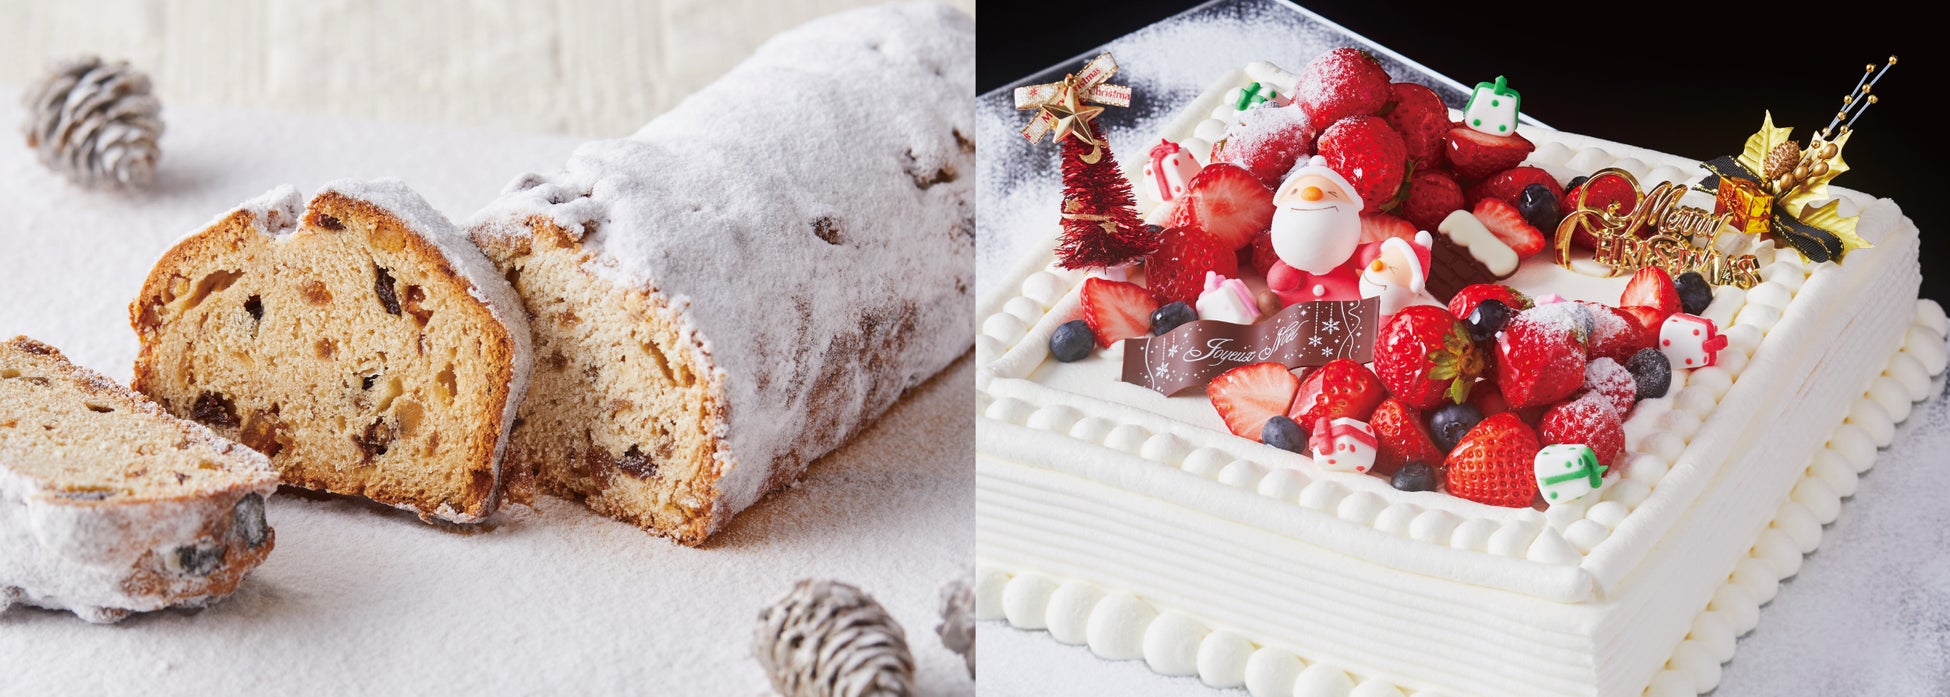 12月23日（土）〜25日（月）の3日間は、ファゴットで販売しているクリスマスケーキ「シュルプリーズ・ド・ノエル」と「シュトーレン」をご用意